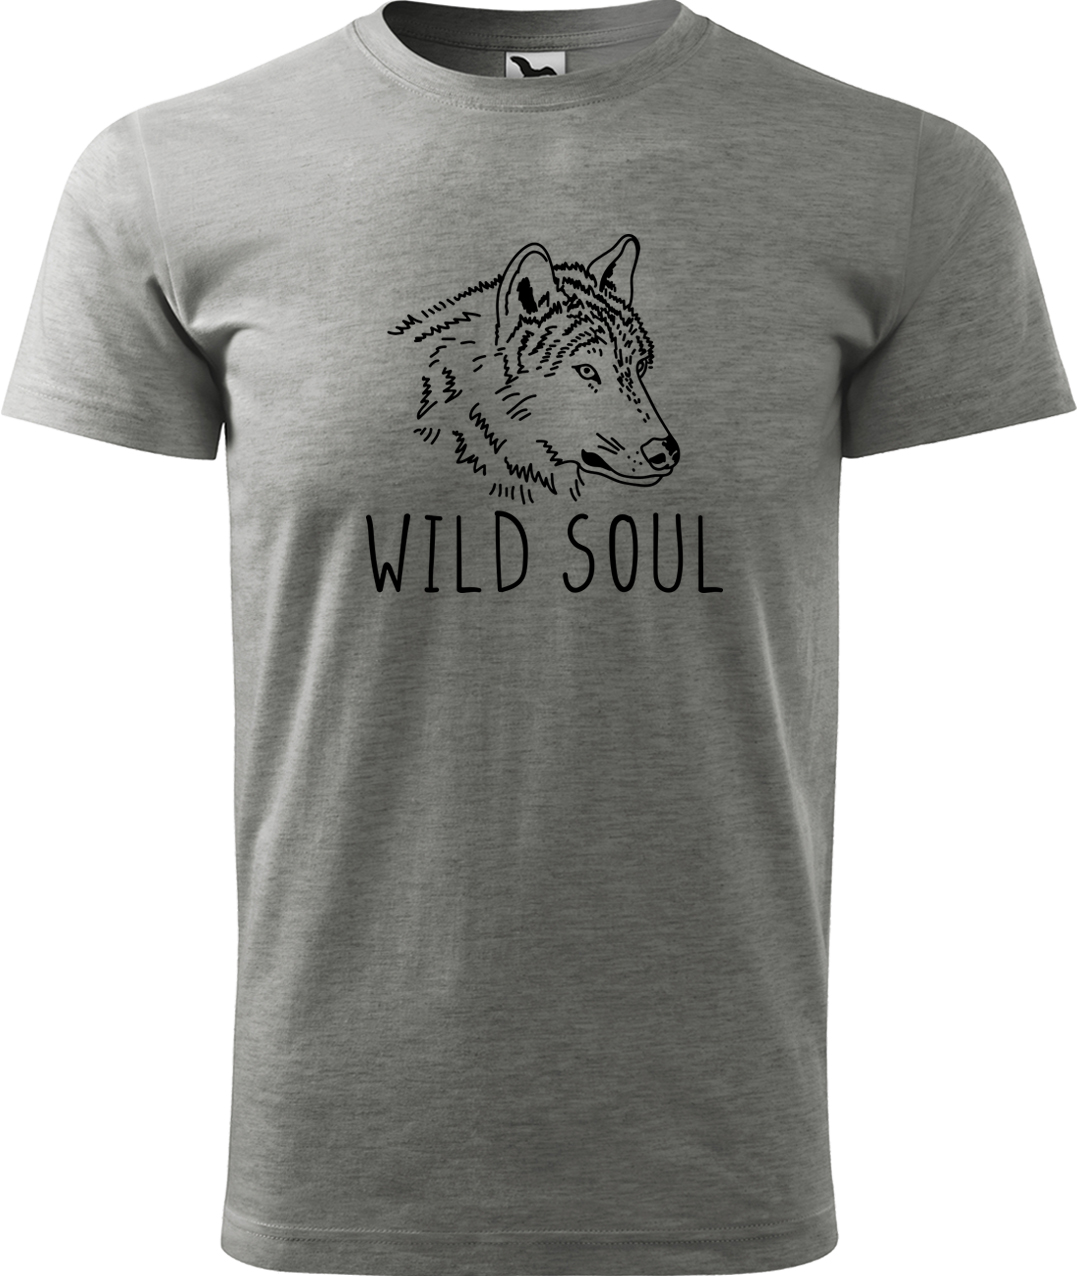 Pánské tričko s vlkem - Wild soul Velikost: L, Barva: Tmavě šedý melír (12), Střih: pánský